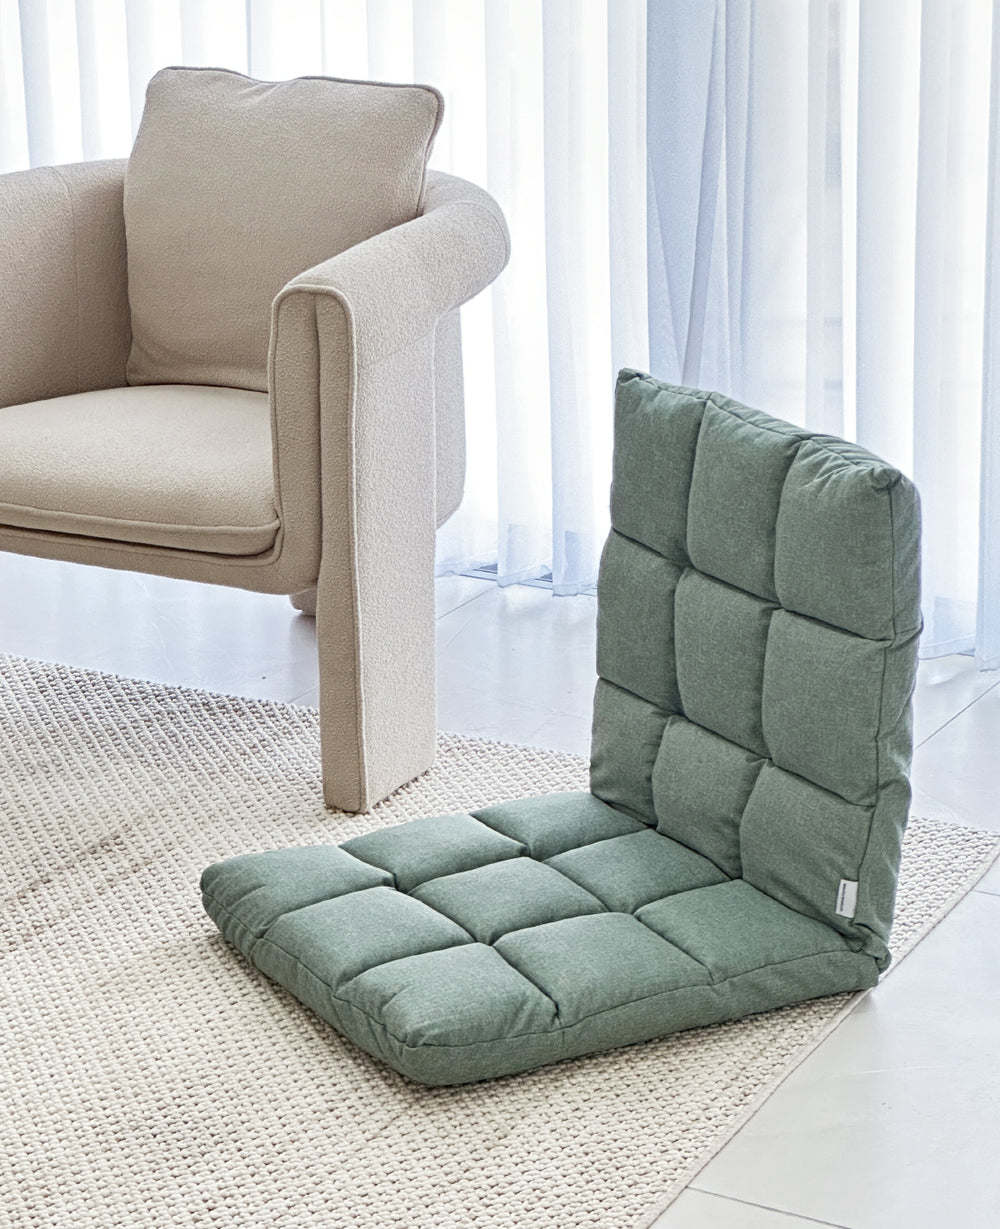 כיסא יפני ירוק - במכירה מוקדמת